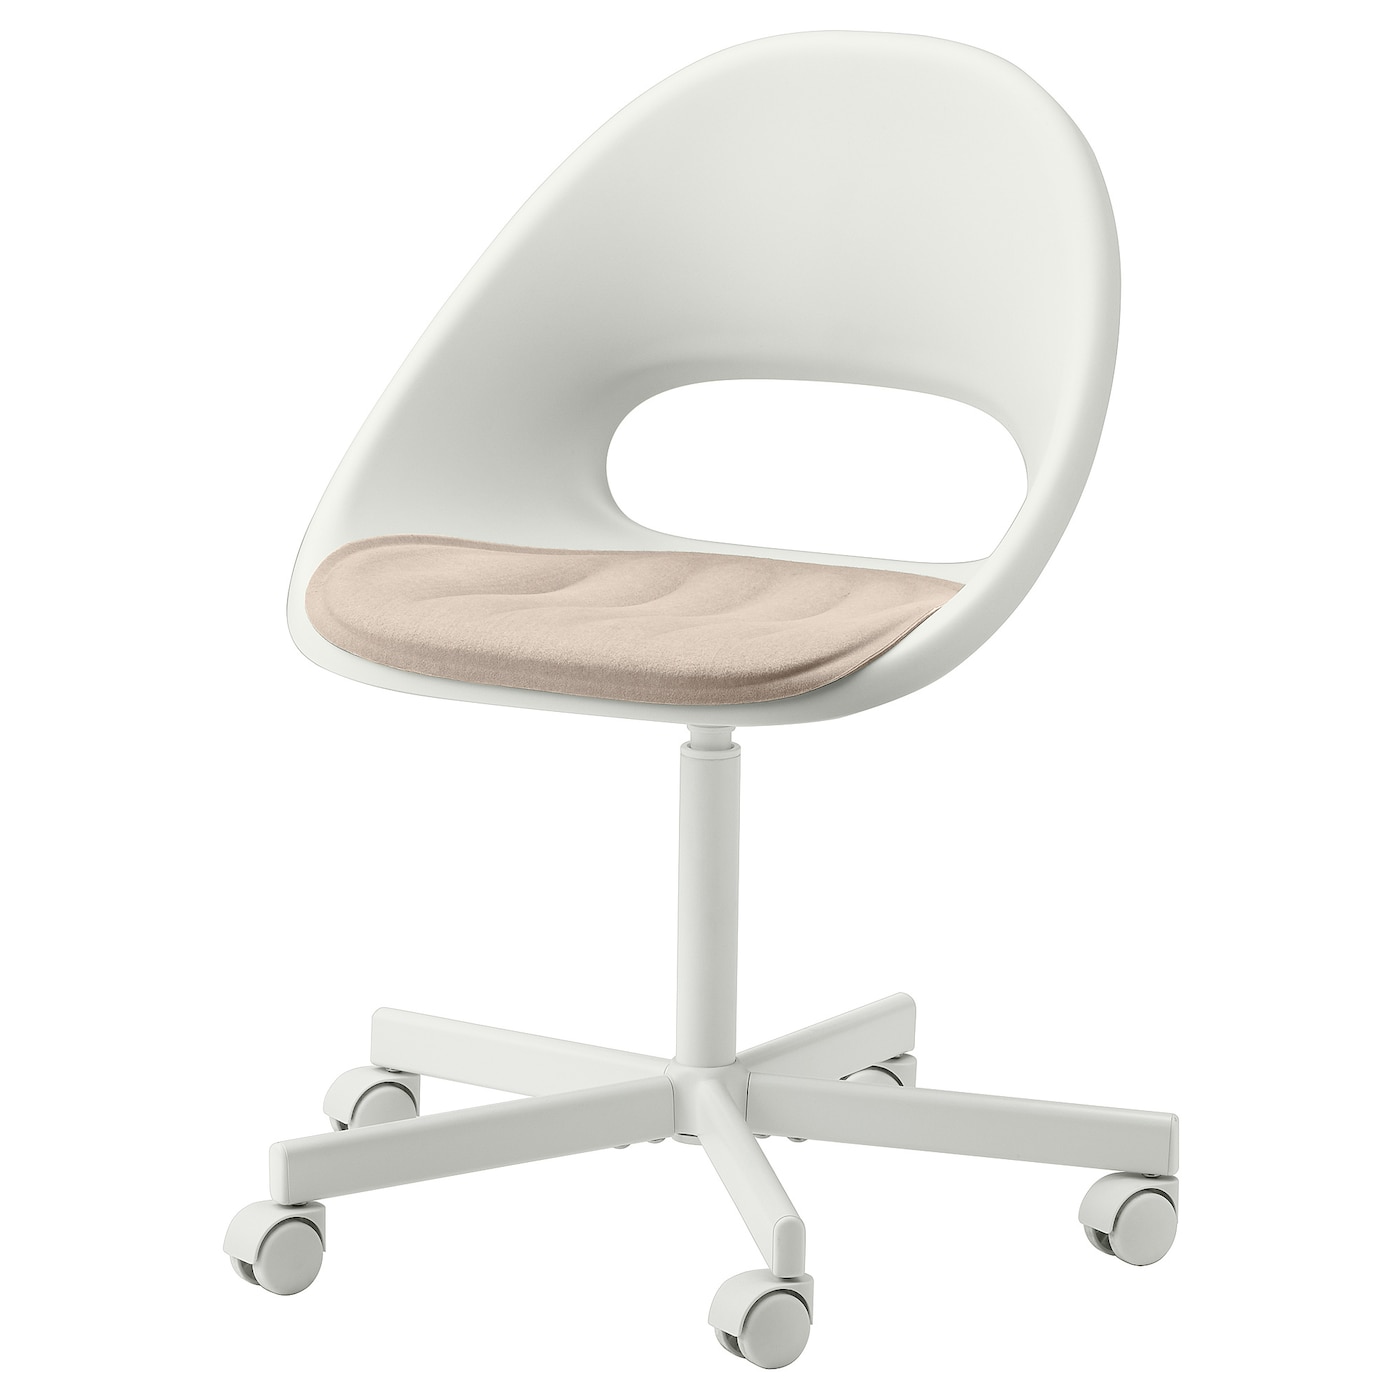 LOBERGET / BLYSKäR - krzesło obrotowe tapicerowane biały/beżowy